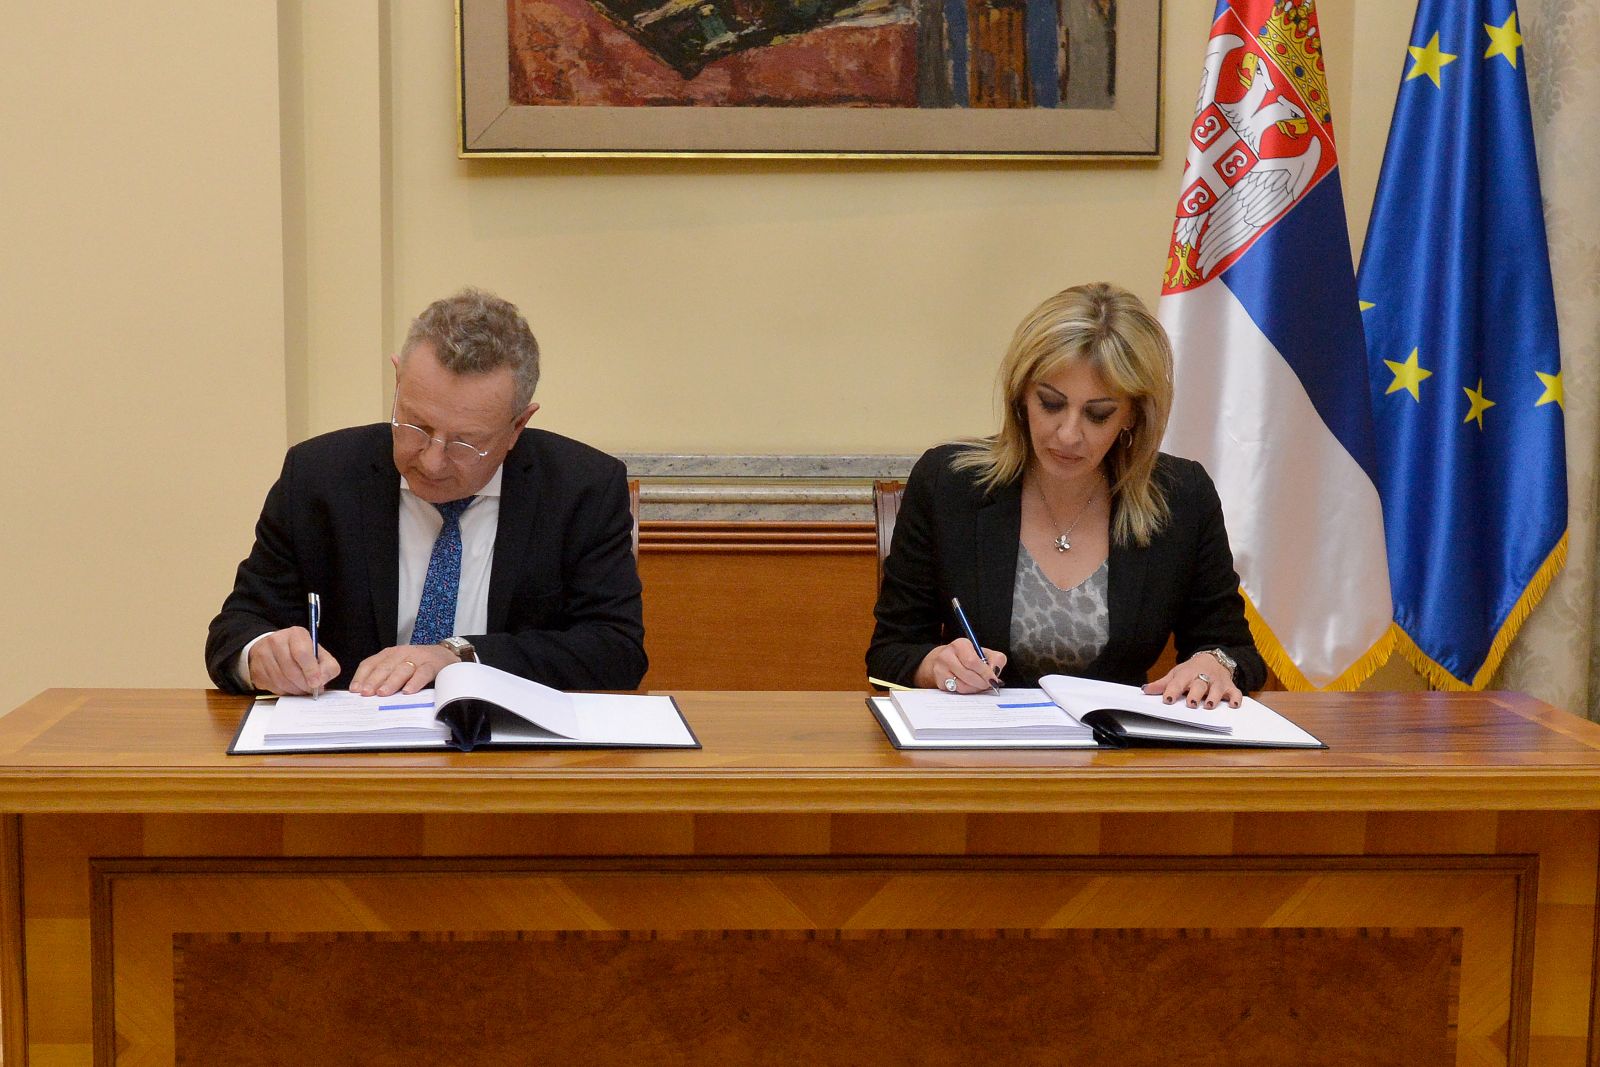 Ј. Јоксимовић: Потписан споразум којим ће се збринути још 900 избегличких породица у Србији